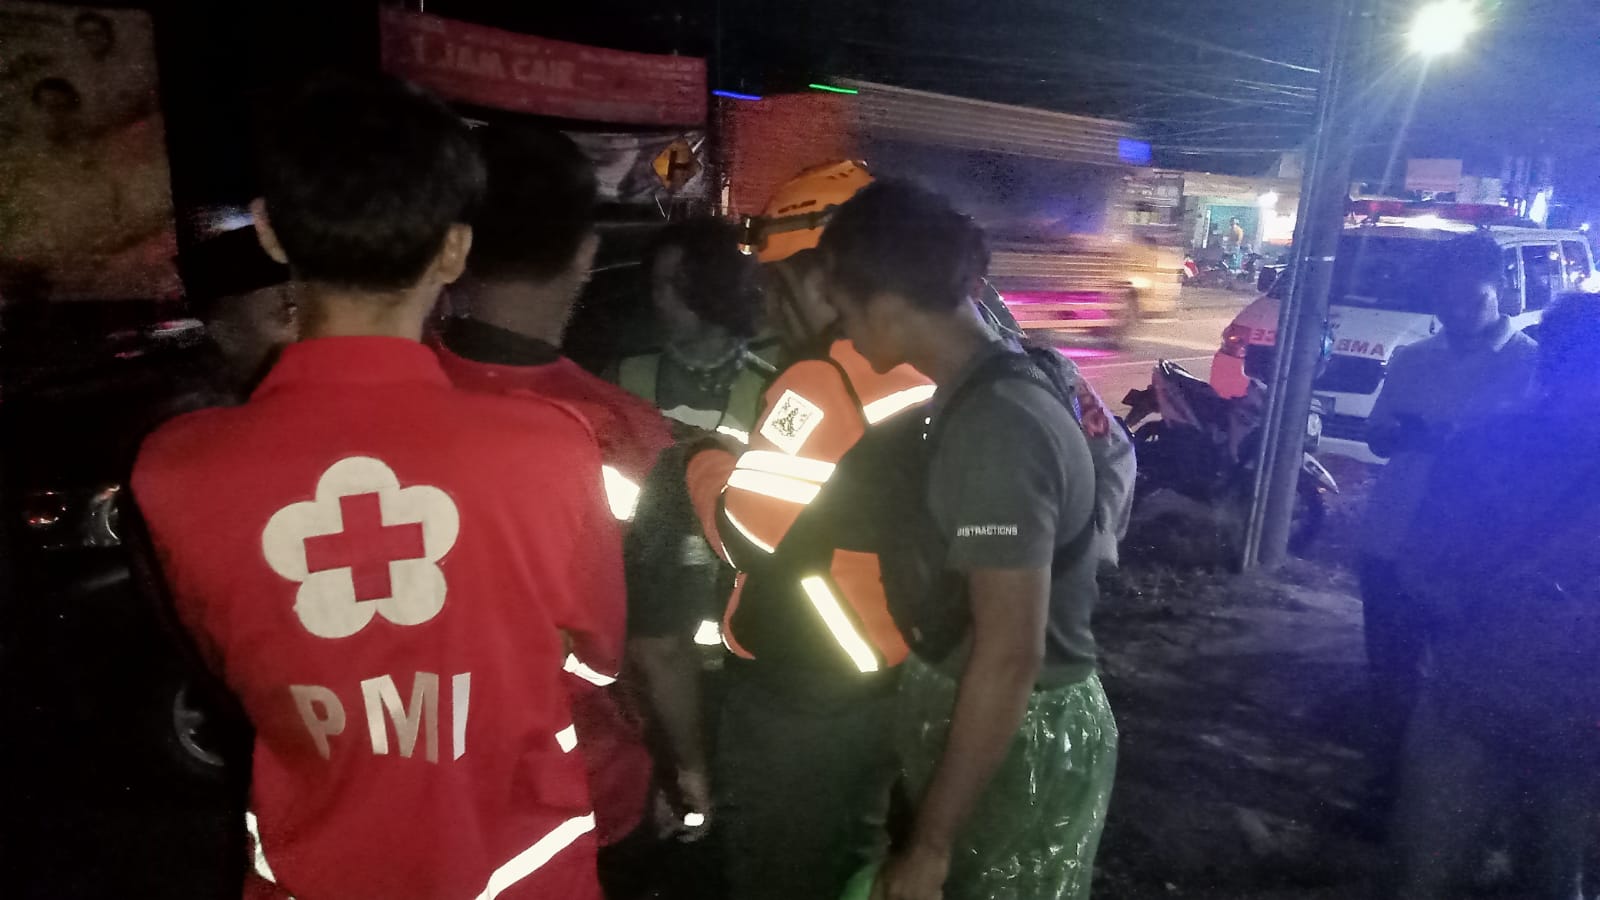 PENCARIAN : Petugas gabungan saat koordinasi untuk melakukan pencarian seorang petugas surveyer dari yang dikabarkan tenggelam di sungai Jembatan Cikukulu, Desa Cibolang Kaler, Kecamatan Cisaat pada Jumat (05/05) malam.